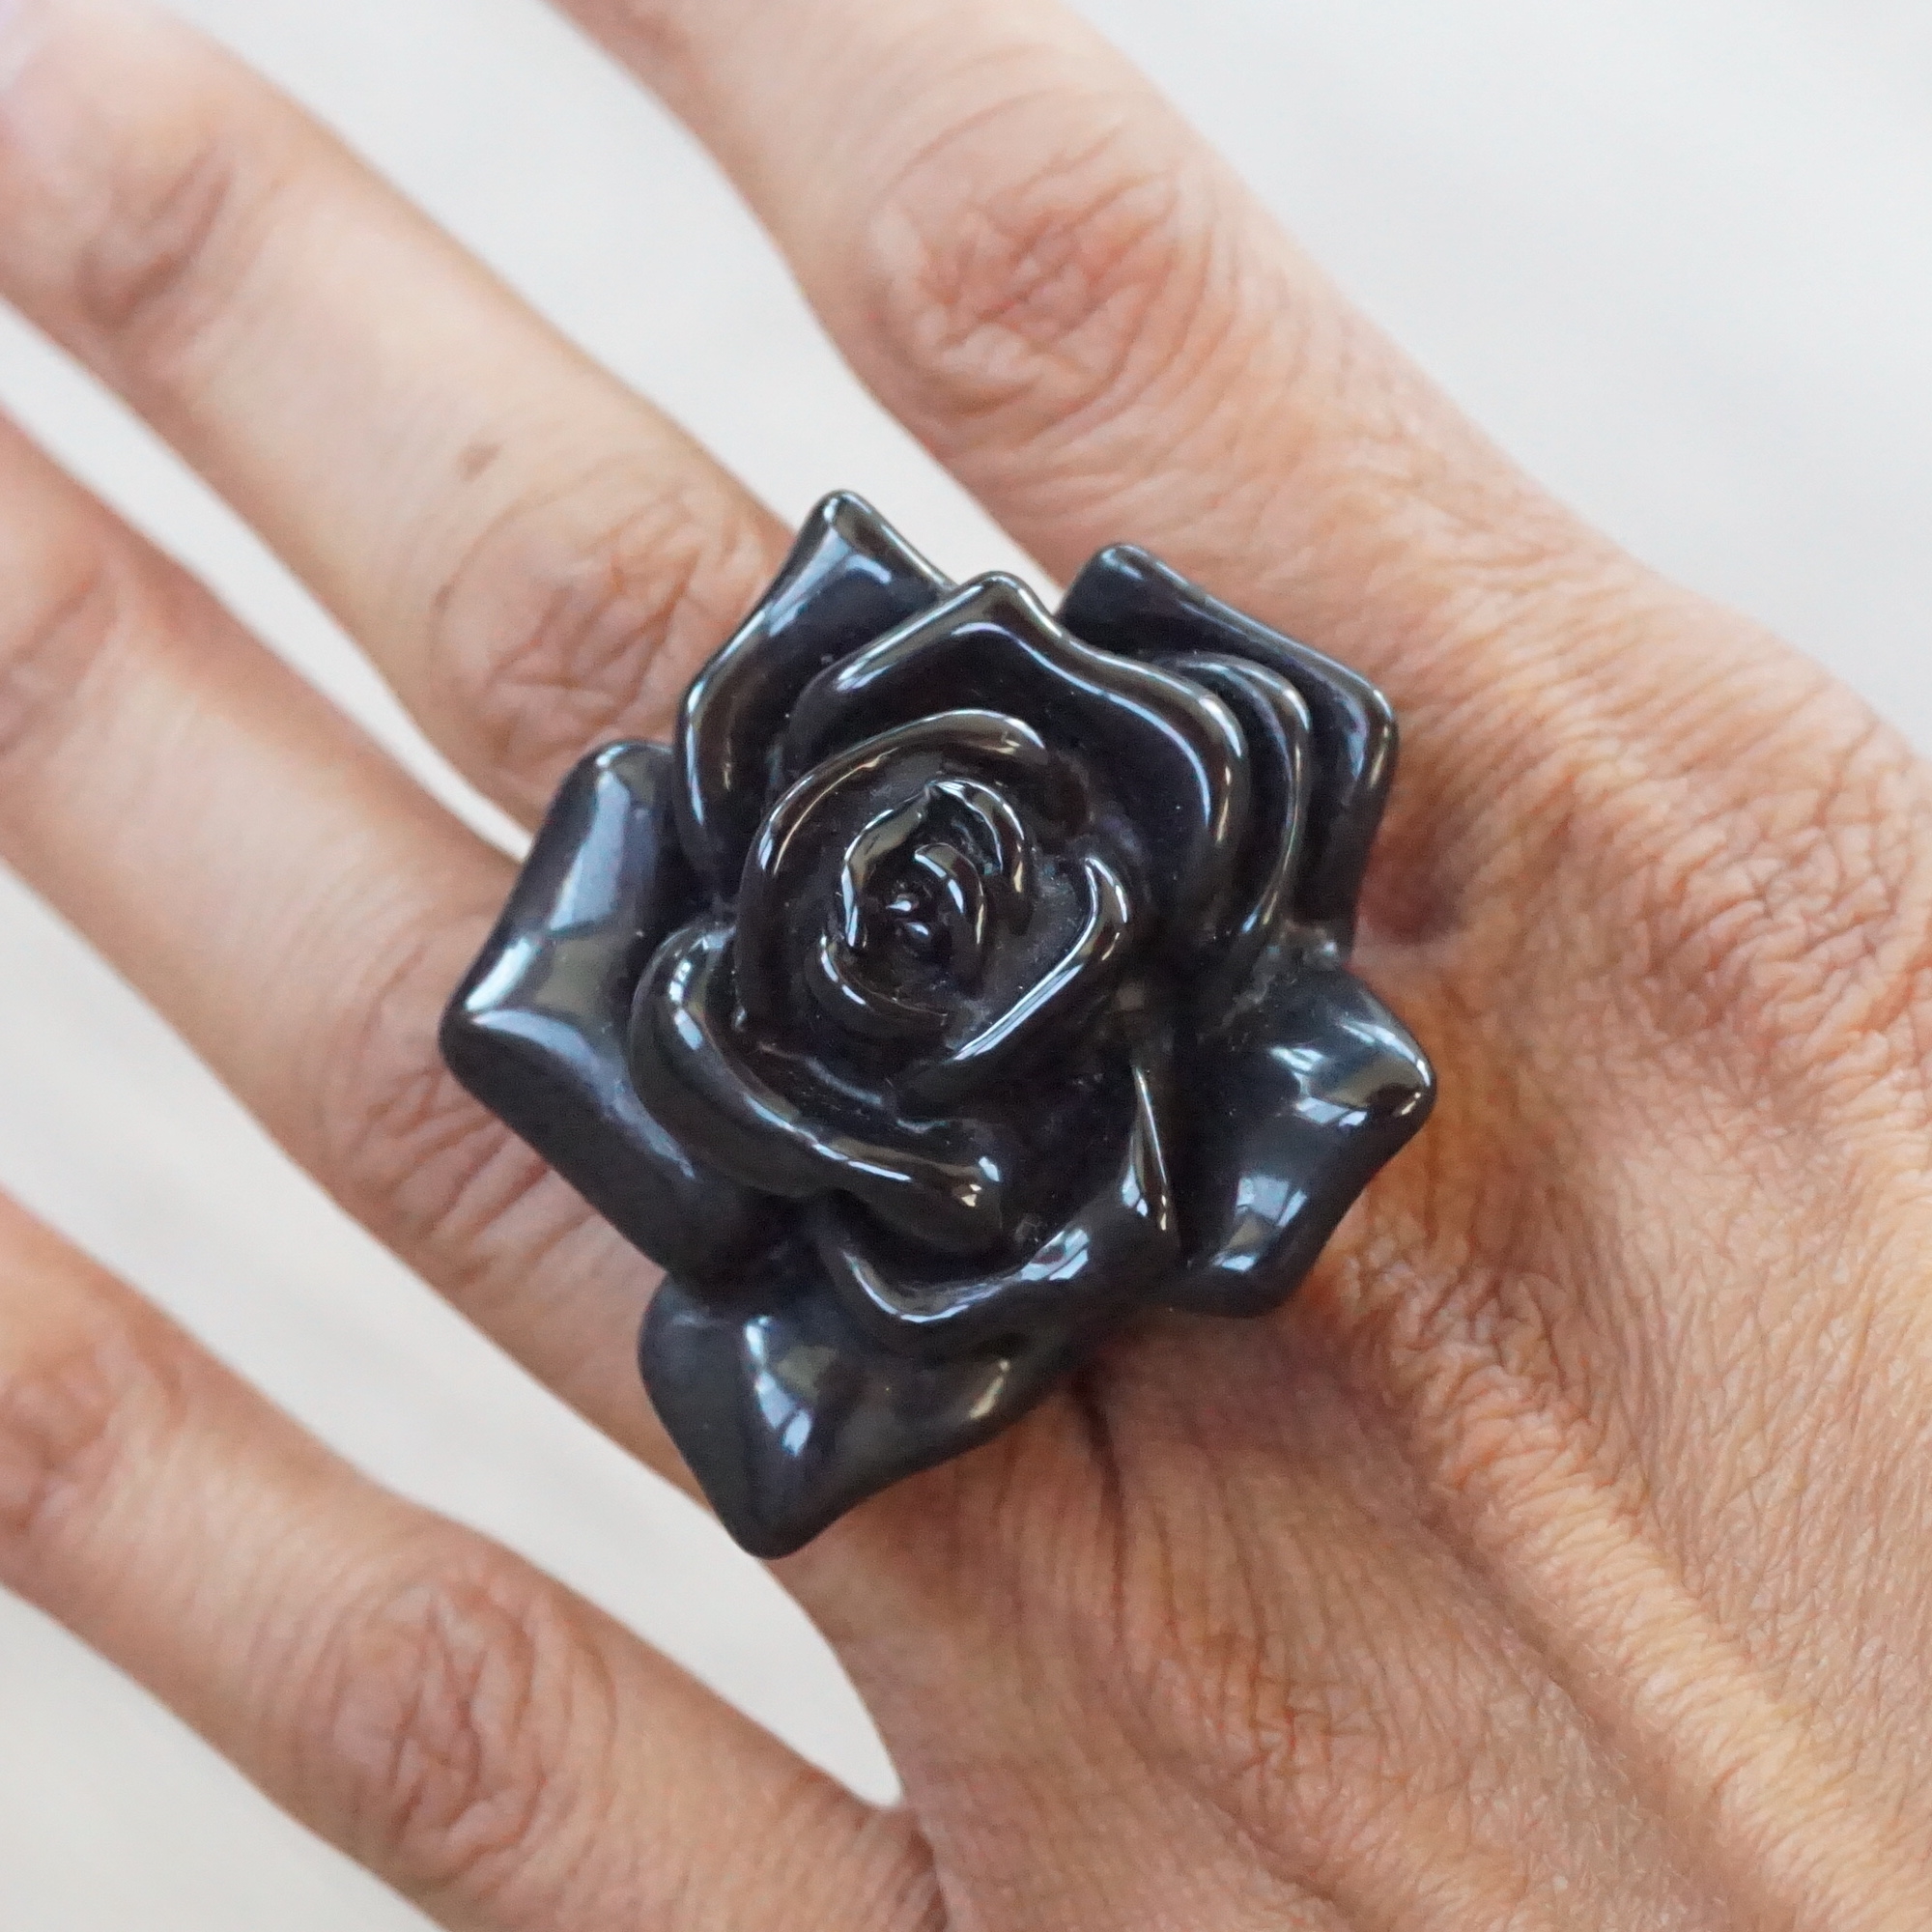 Acrylic Flower Ring in Black on Finger